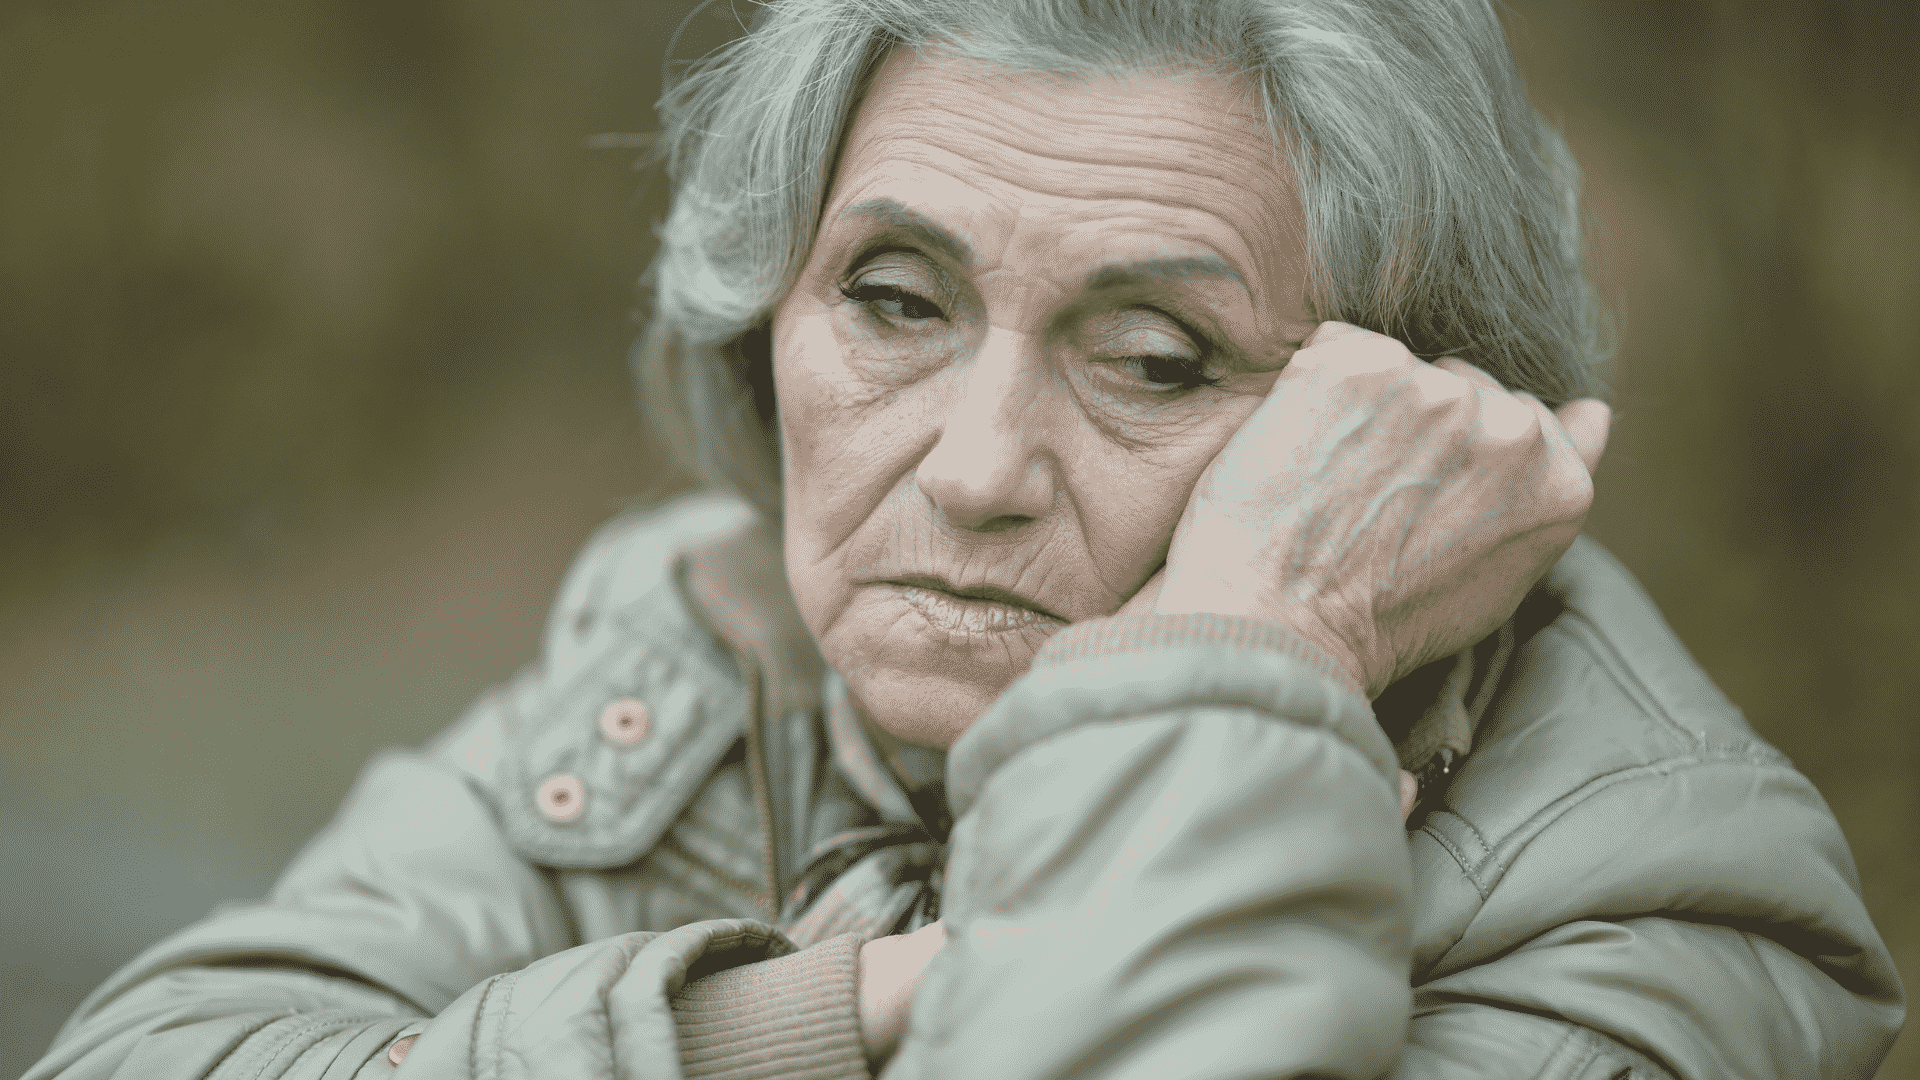 Mulher idosa com expressão triste